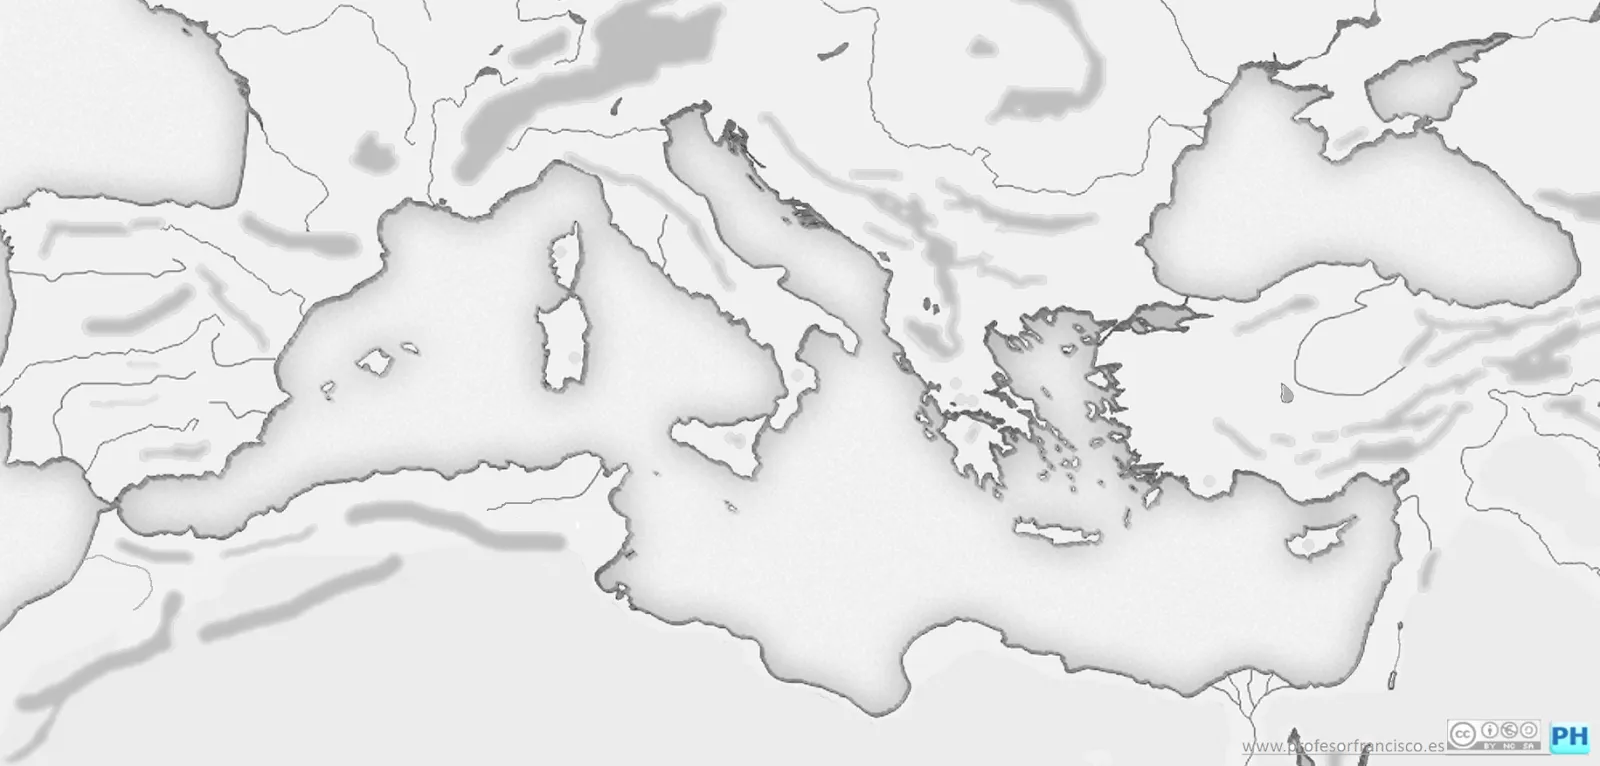 Profesor de Historia, Geografía y Arte: Mapas mudos de la Edad Antigua